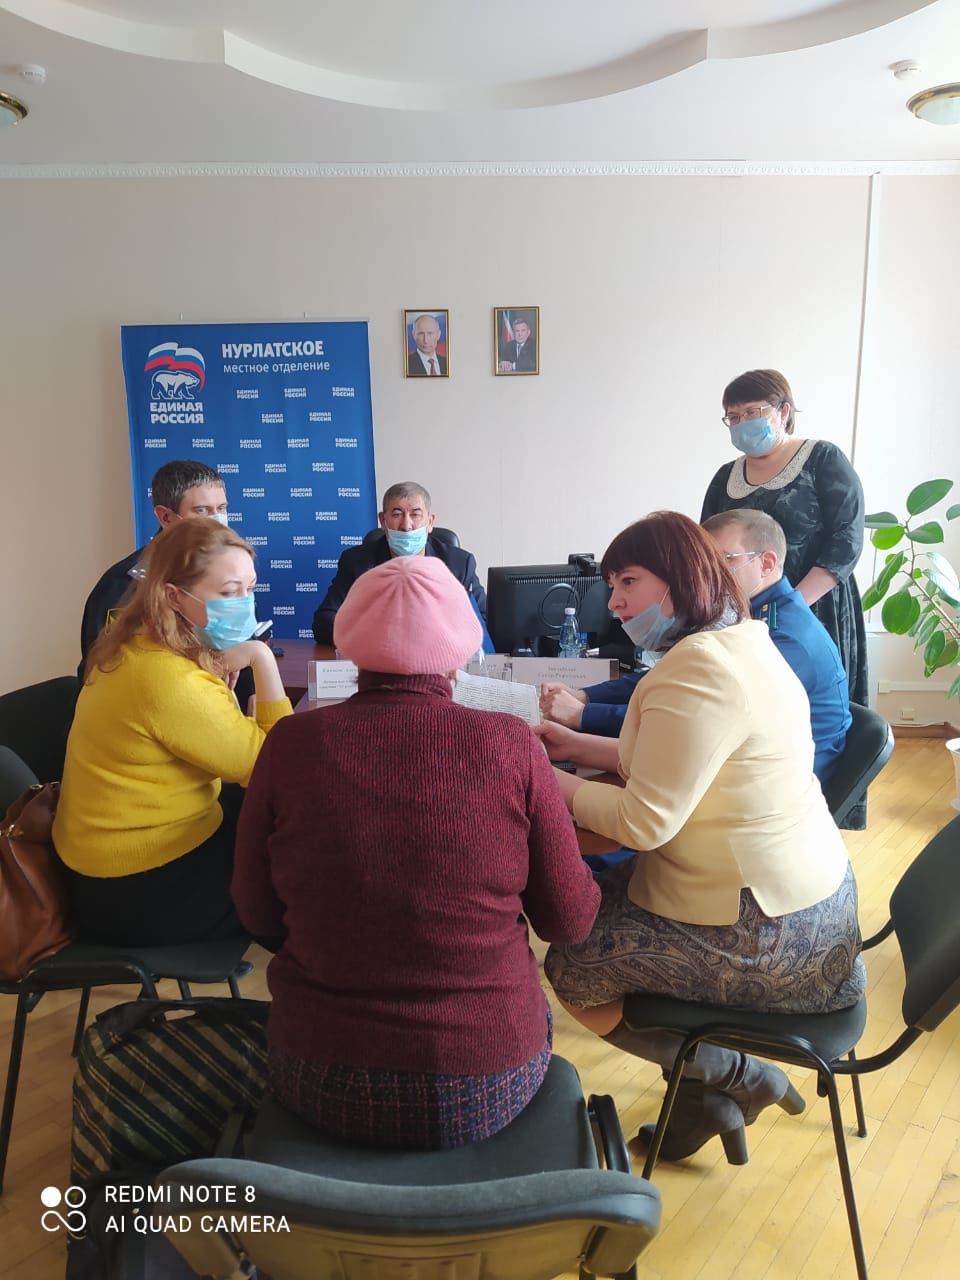 В общественной приемной Нурлатского местного отделения партии «Единая Россия» прошел прием граждан